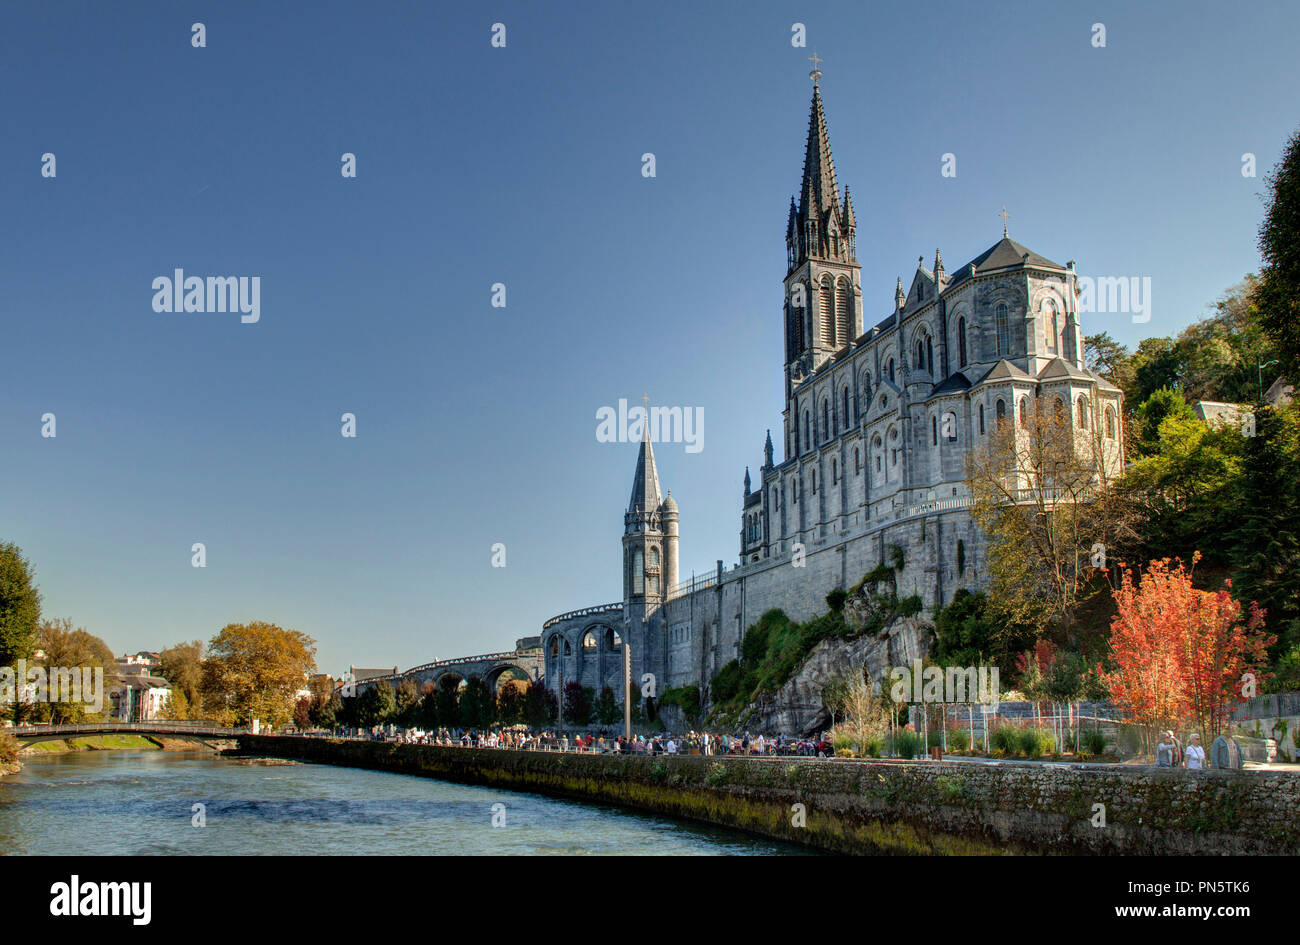 Lourdes (Frankreich): äußere Ansicht der Basilika Unserer Lieben Frau vom Rosenkranz und der Gave de Pau Fluss (nicht für Postkarte Produktion verfügbar) Stockfoto